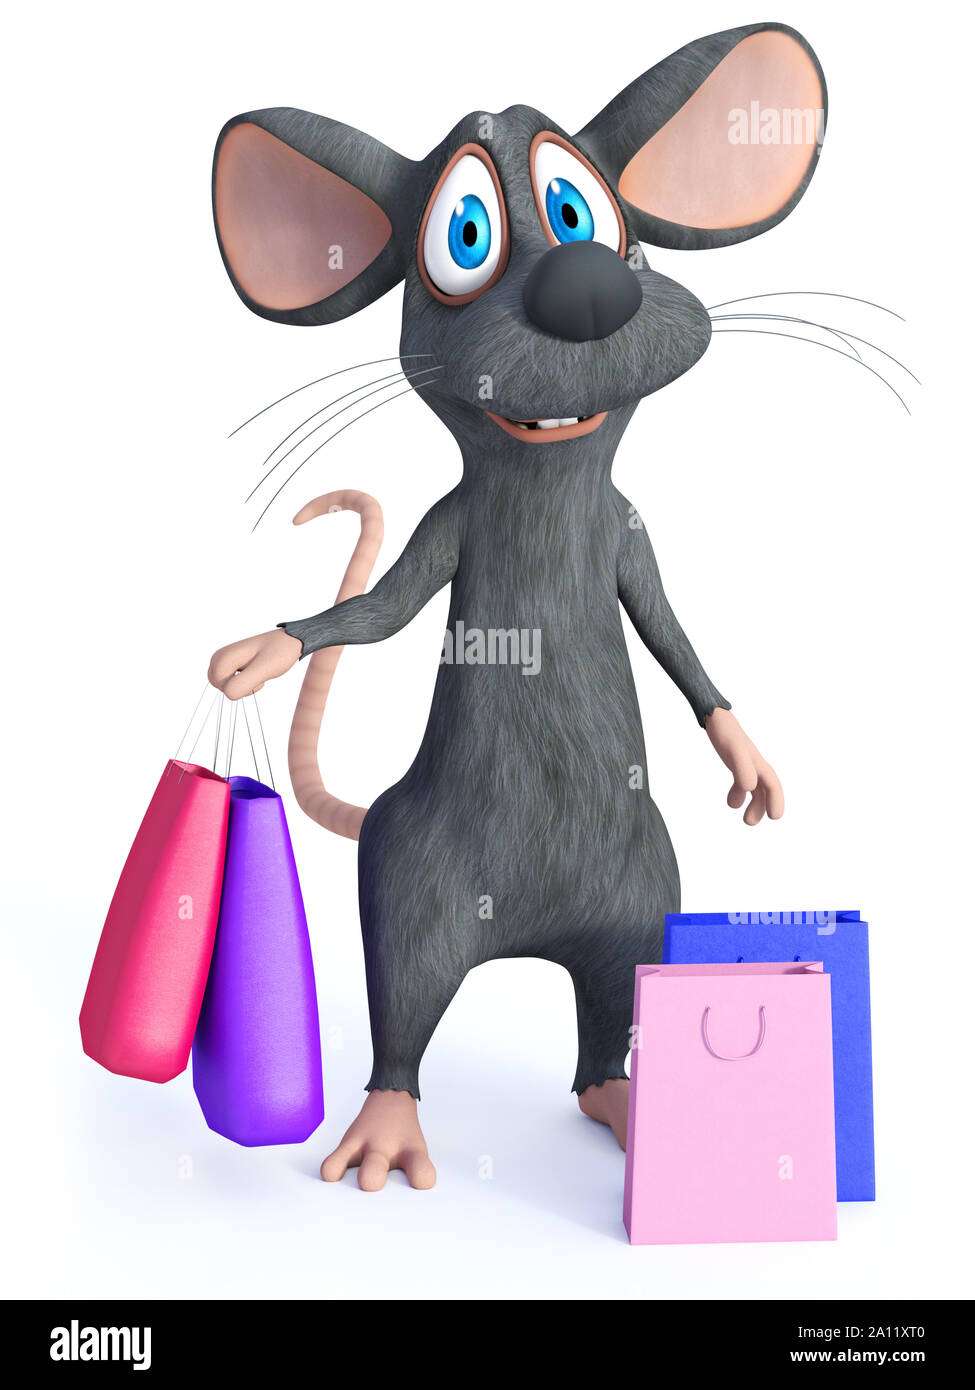 3D-Rendering von einem netten Lächeln cartoon Maus stehend und mit zwei Einkaufstaschen in der Hand. Zwei weitere Taschen sind auf dem Boden neben ihm. W Stockfoto